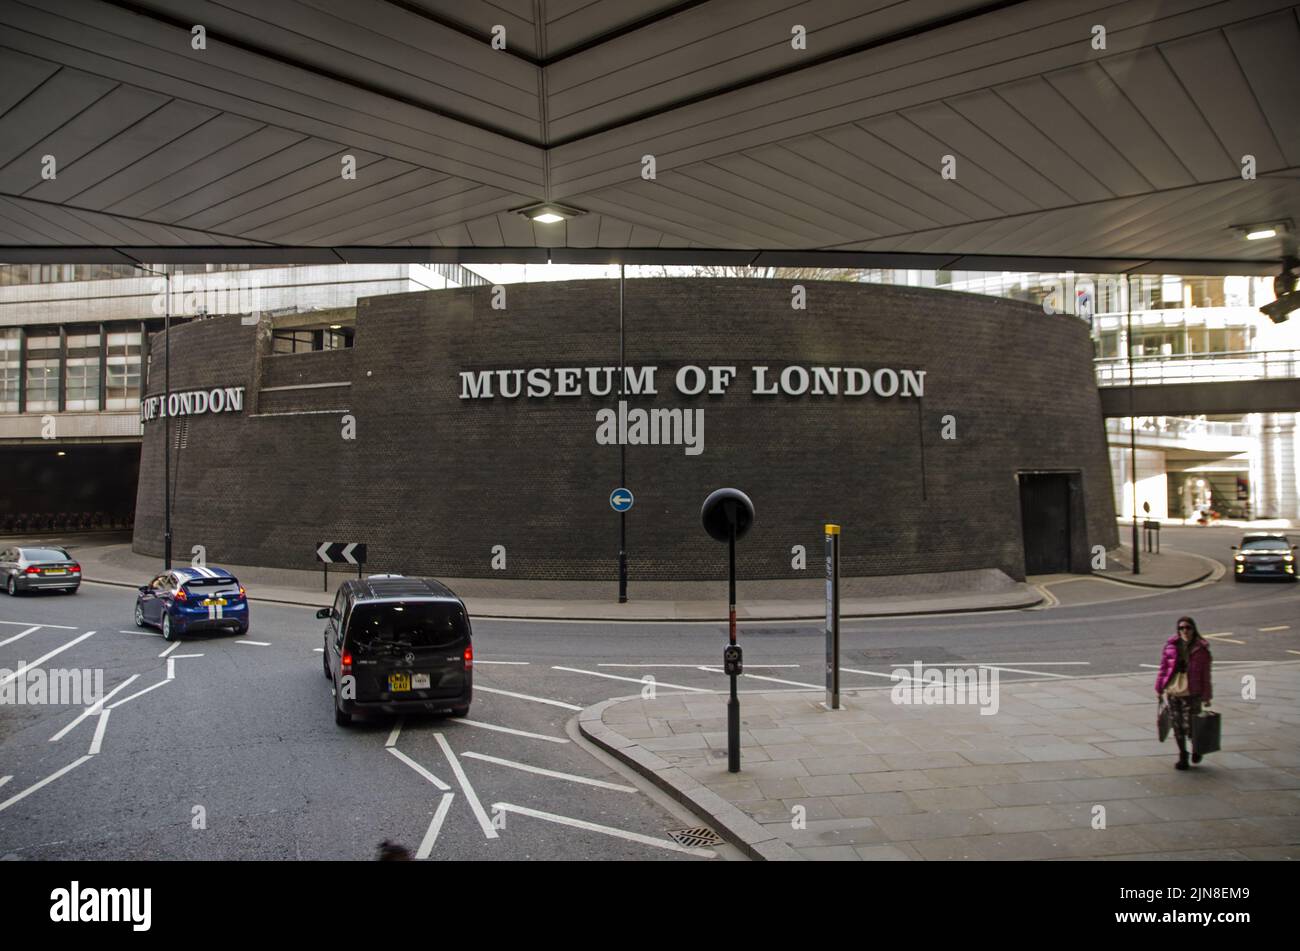 Londra, Regno Unito - 21 marzo 2022: Vista della parte rotunda del Museo di Londra nella città di Londra. Oltre a contenere manufatti per il museo, il Foto Stock